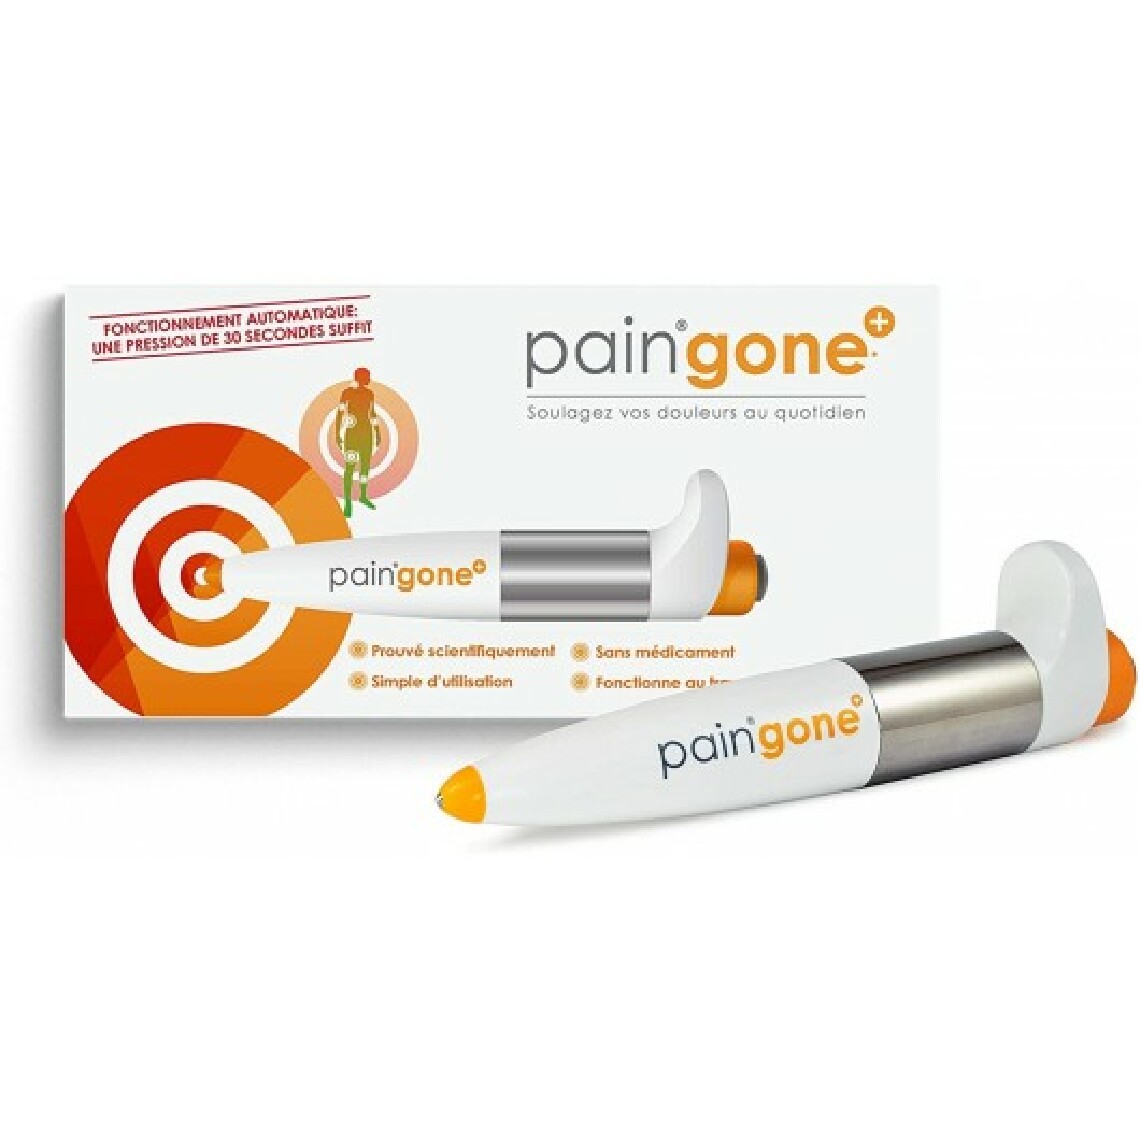 Paingone - Paingone Plus, le dispositif médical anti-douleur - Autre appareil de mesure